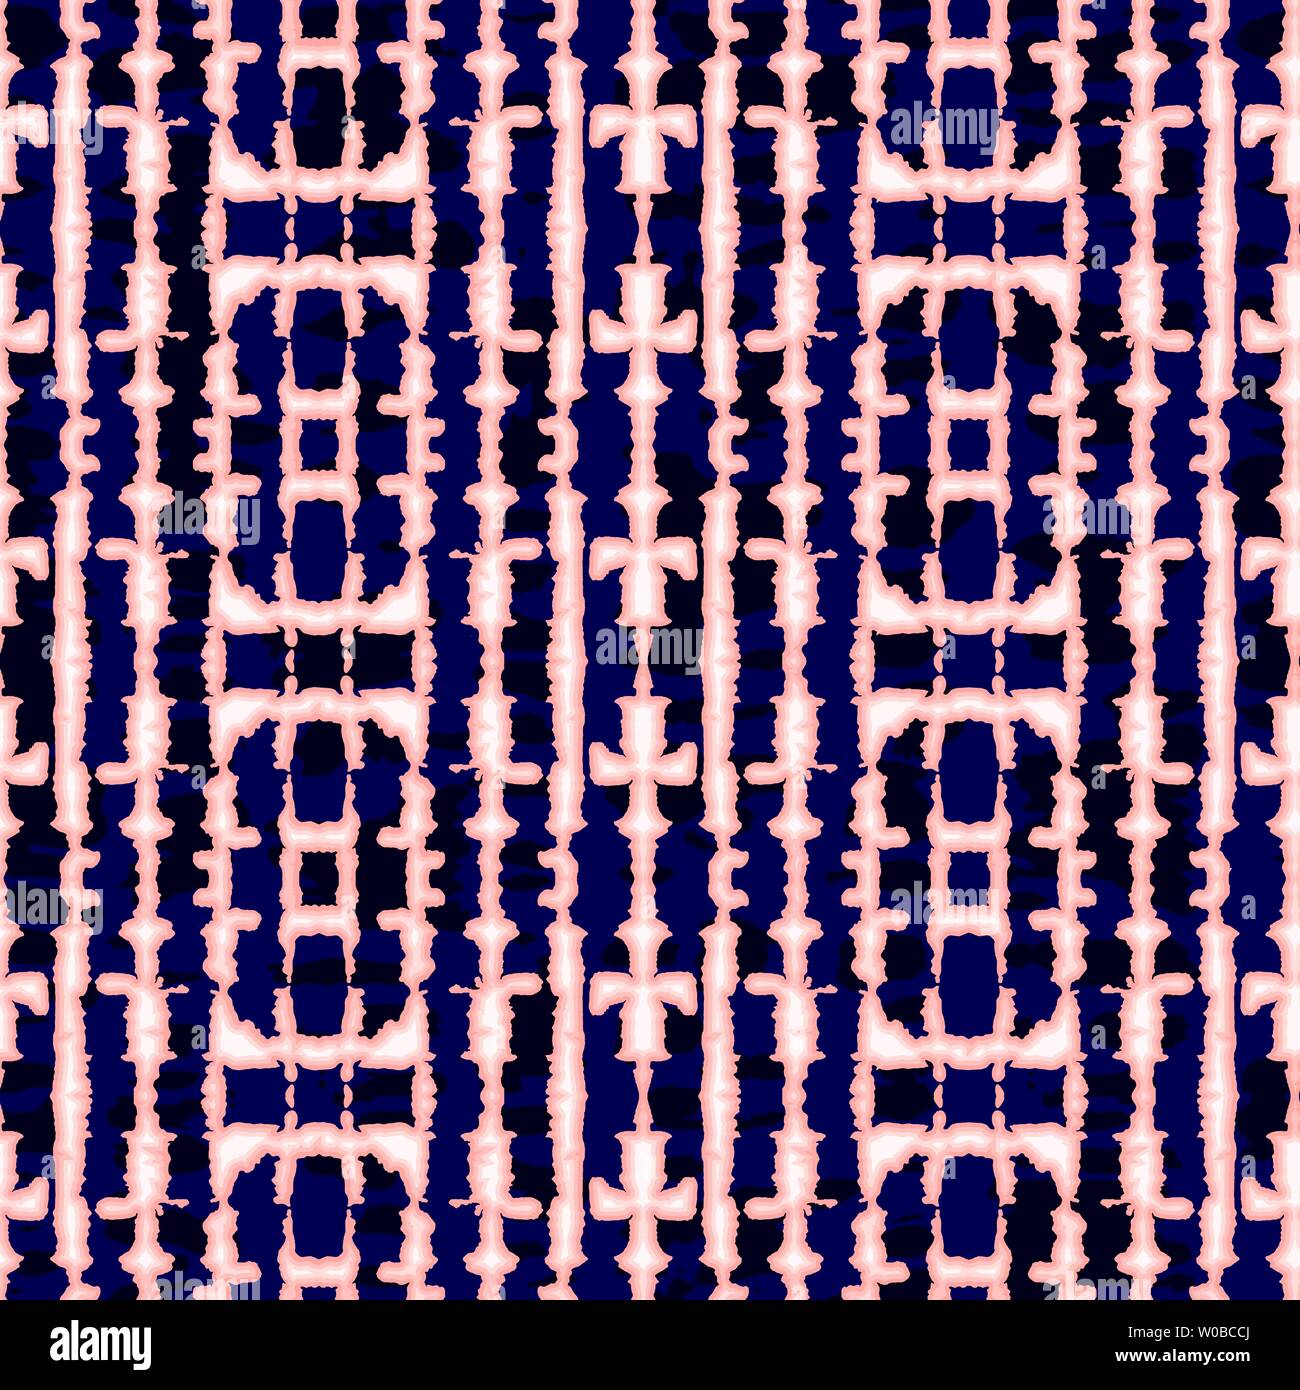 Résumé En Miroir Vertical Coral Tie-Dye Shibori Bandes sur Indigo foncé Backrgound Vector Pattern transparente. Parfait pour les textiles Printemps-été, Statio Illustration de Vecteur